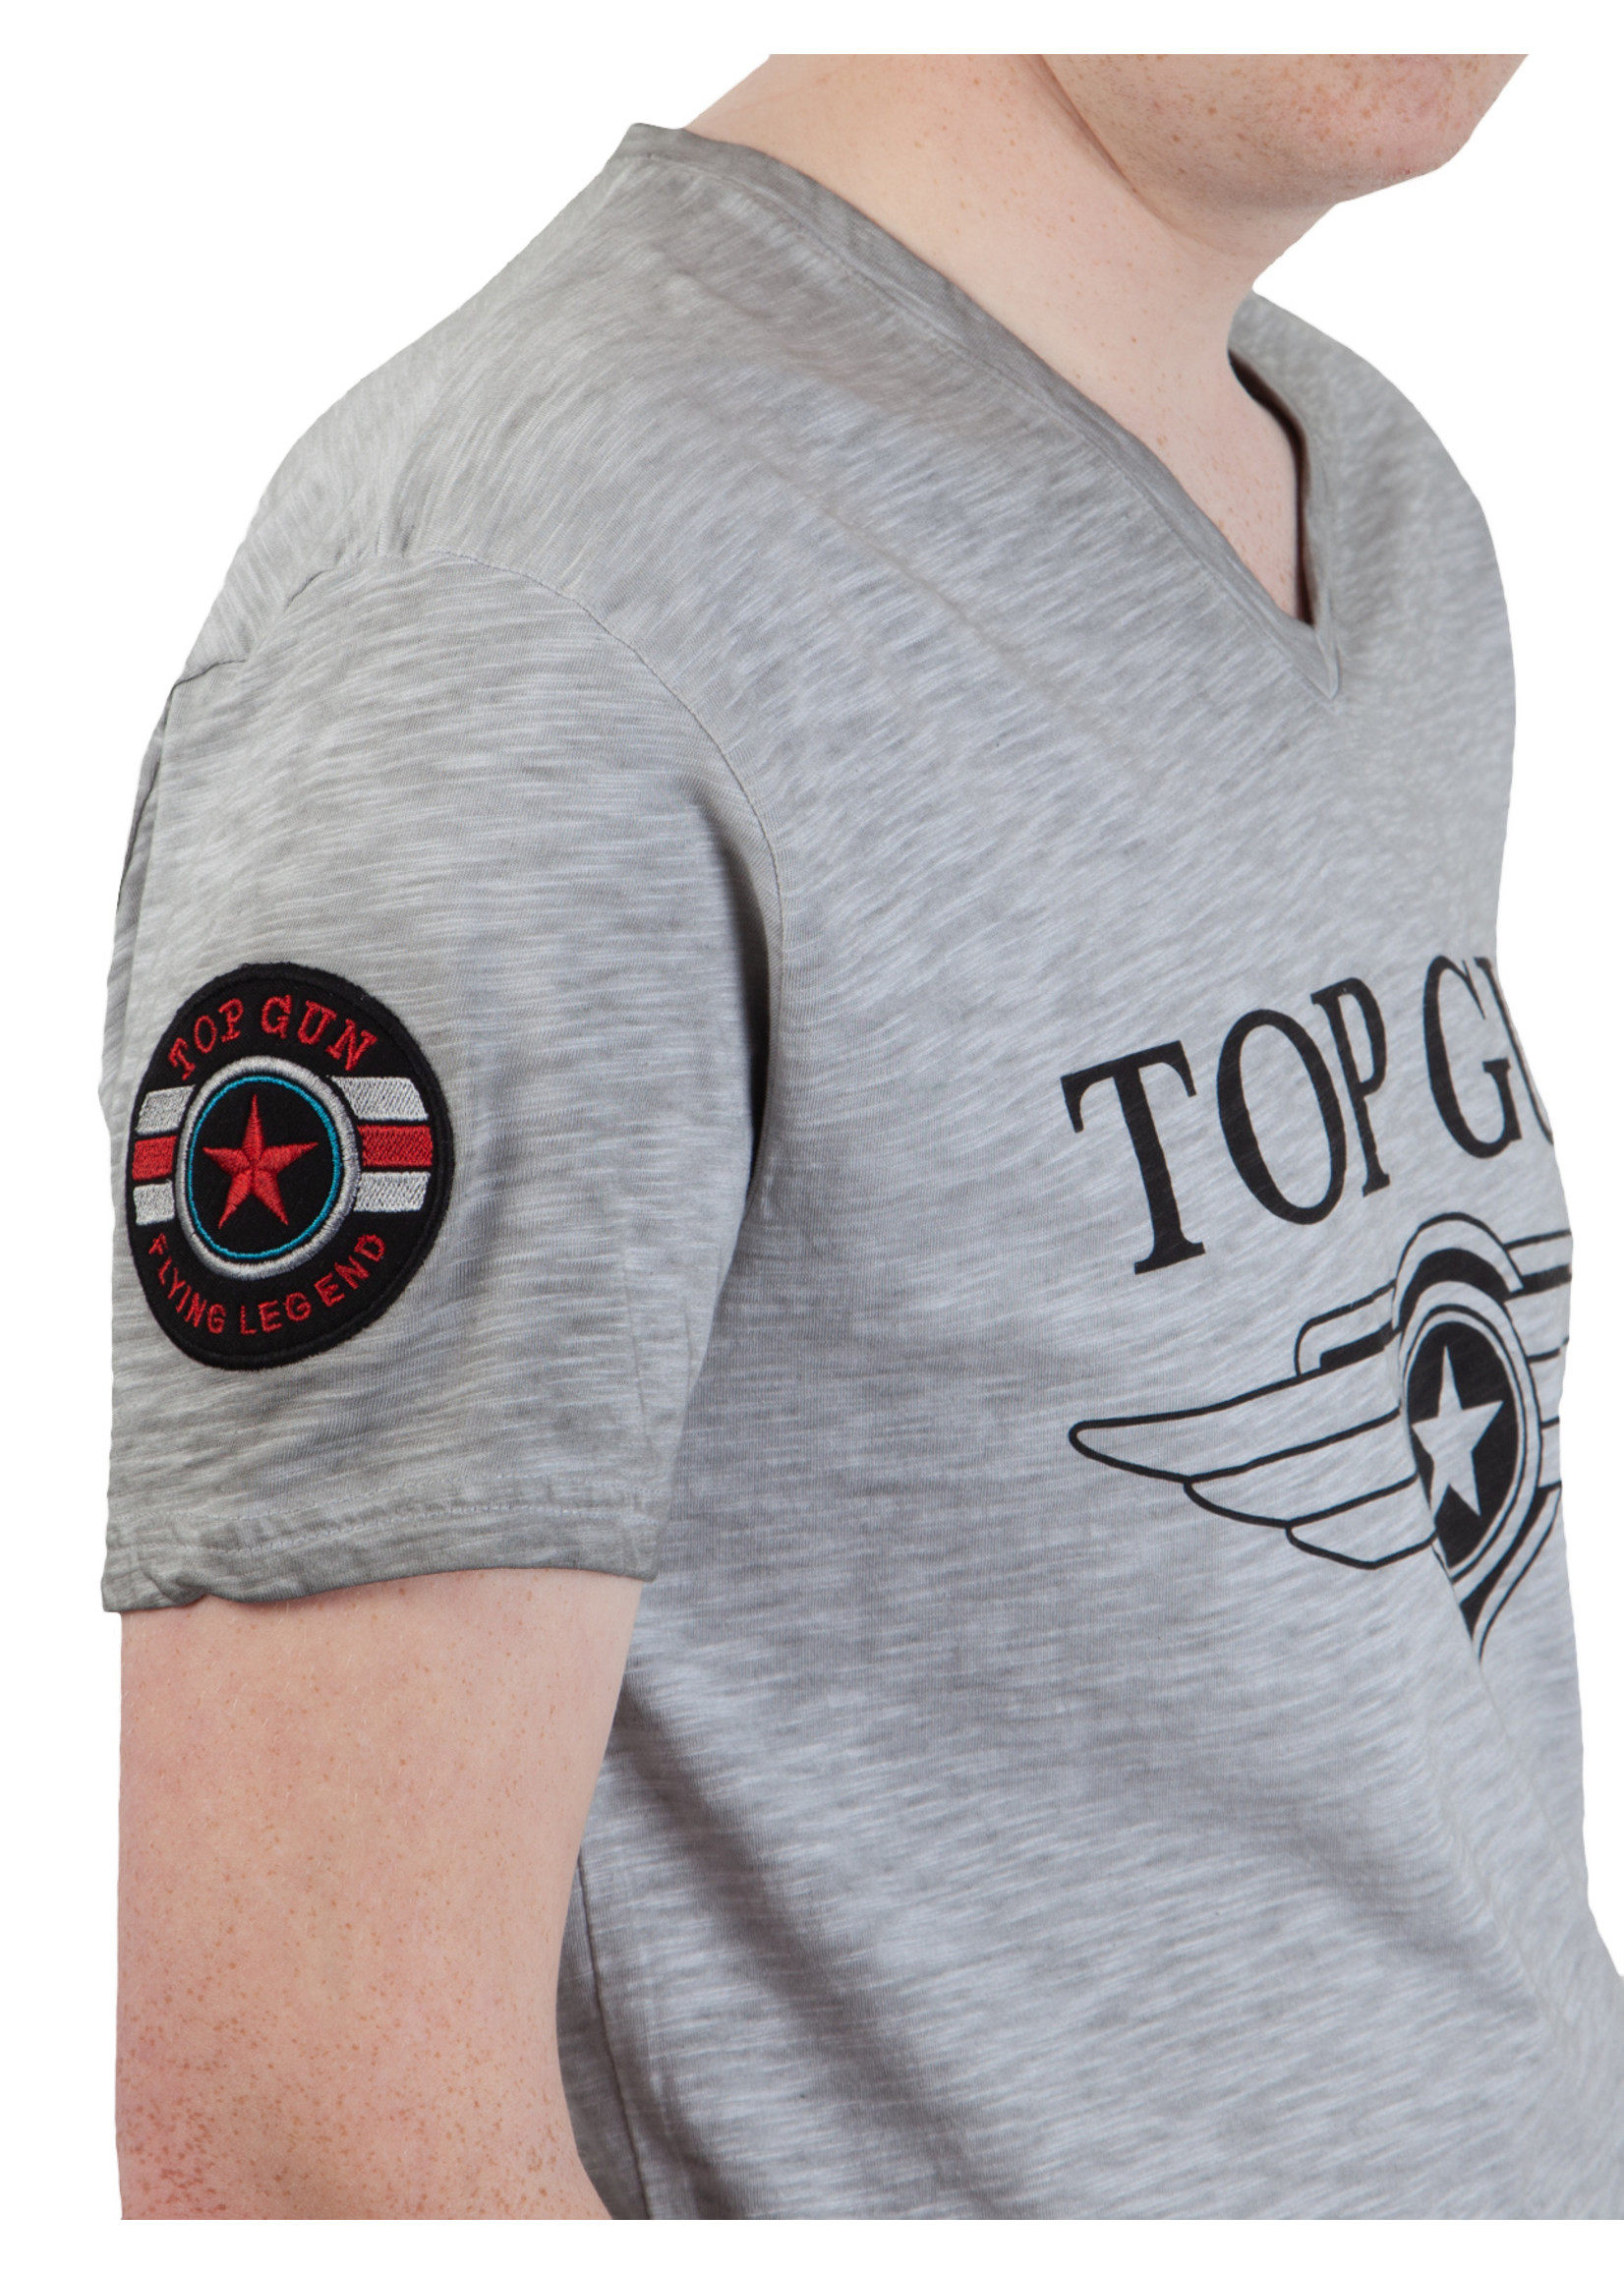 Top Gun Top Gun® "Stormy" T-shirt